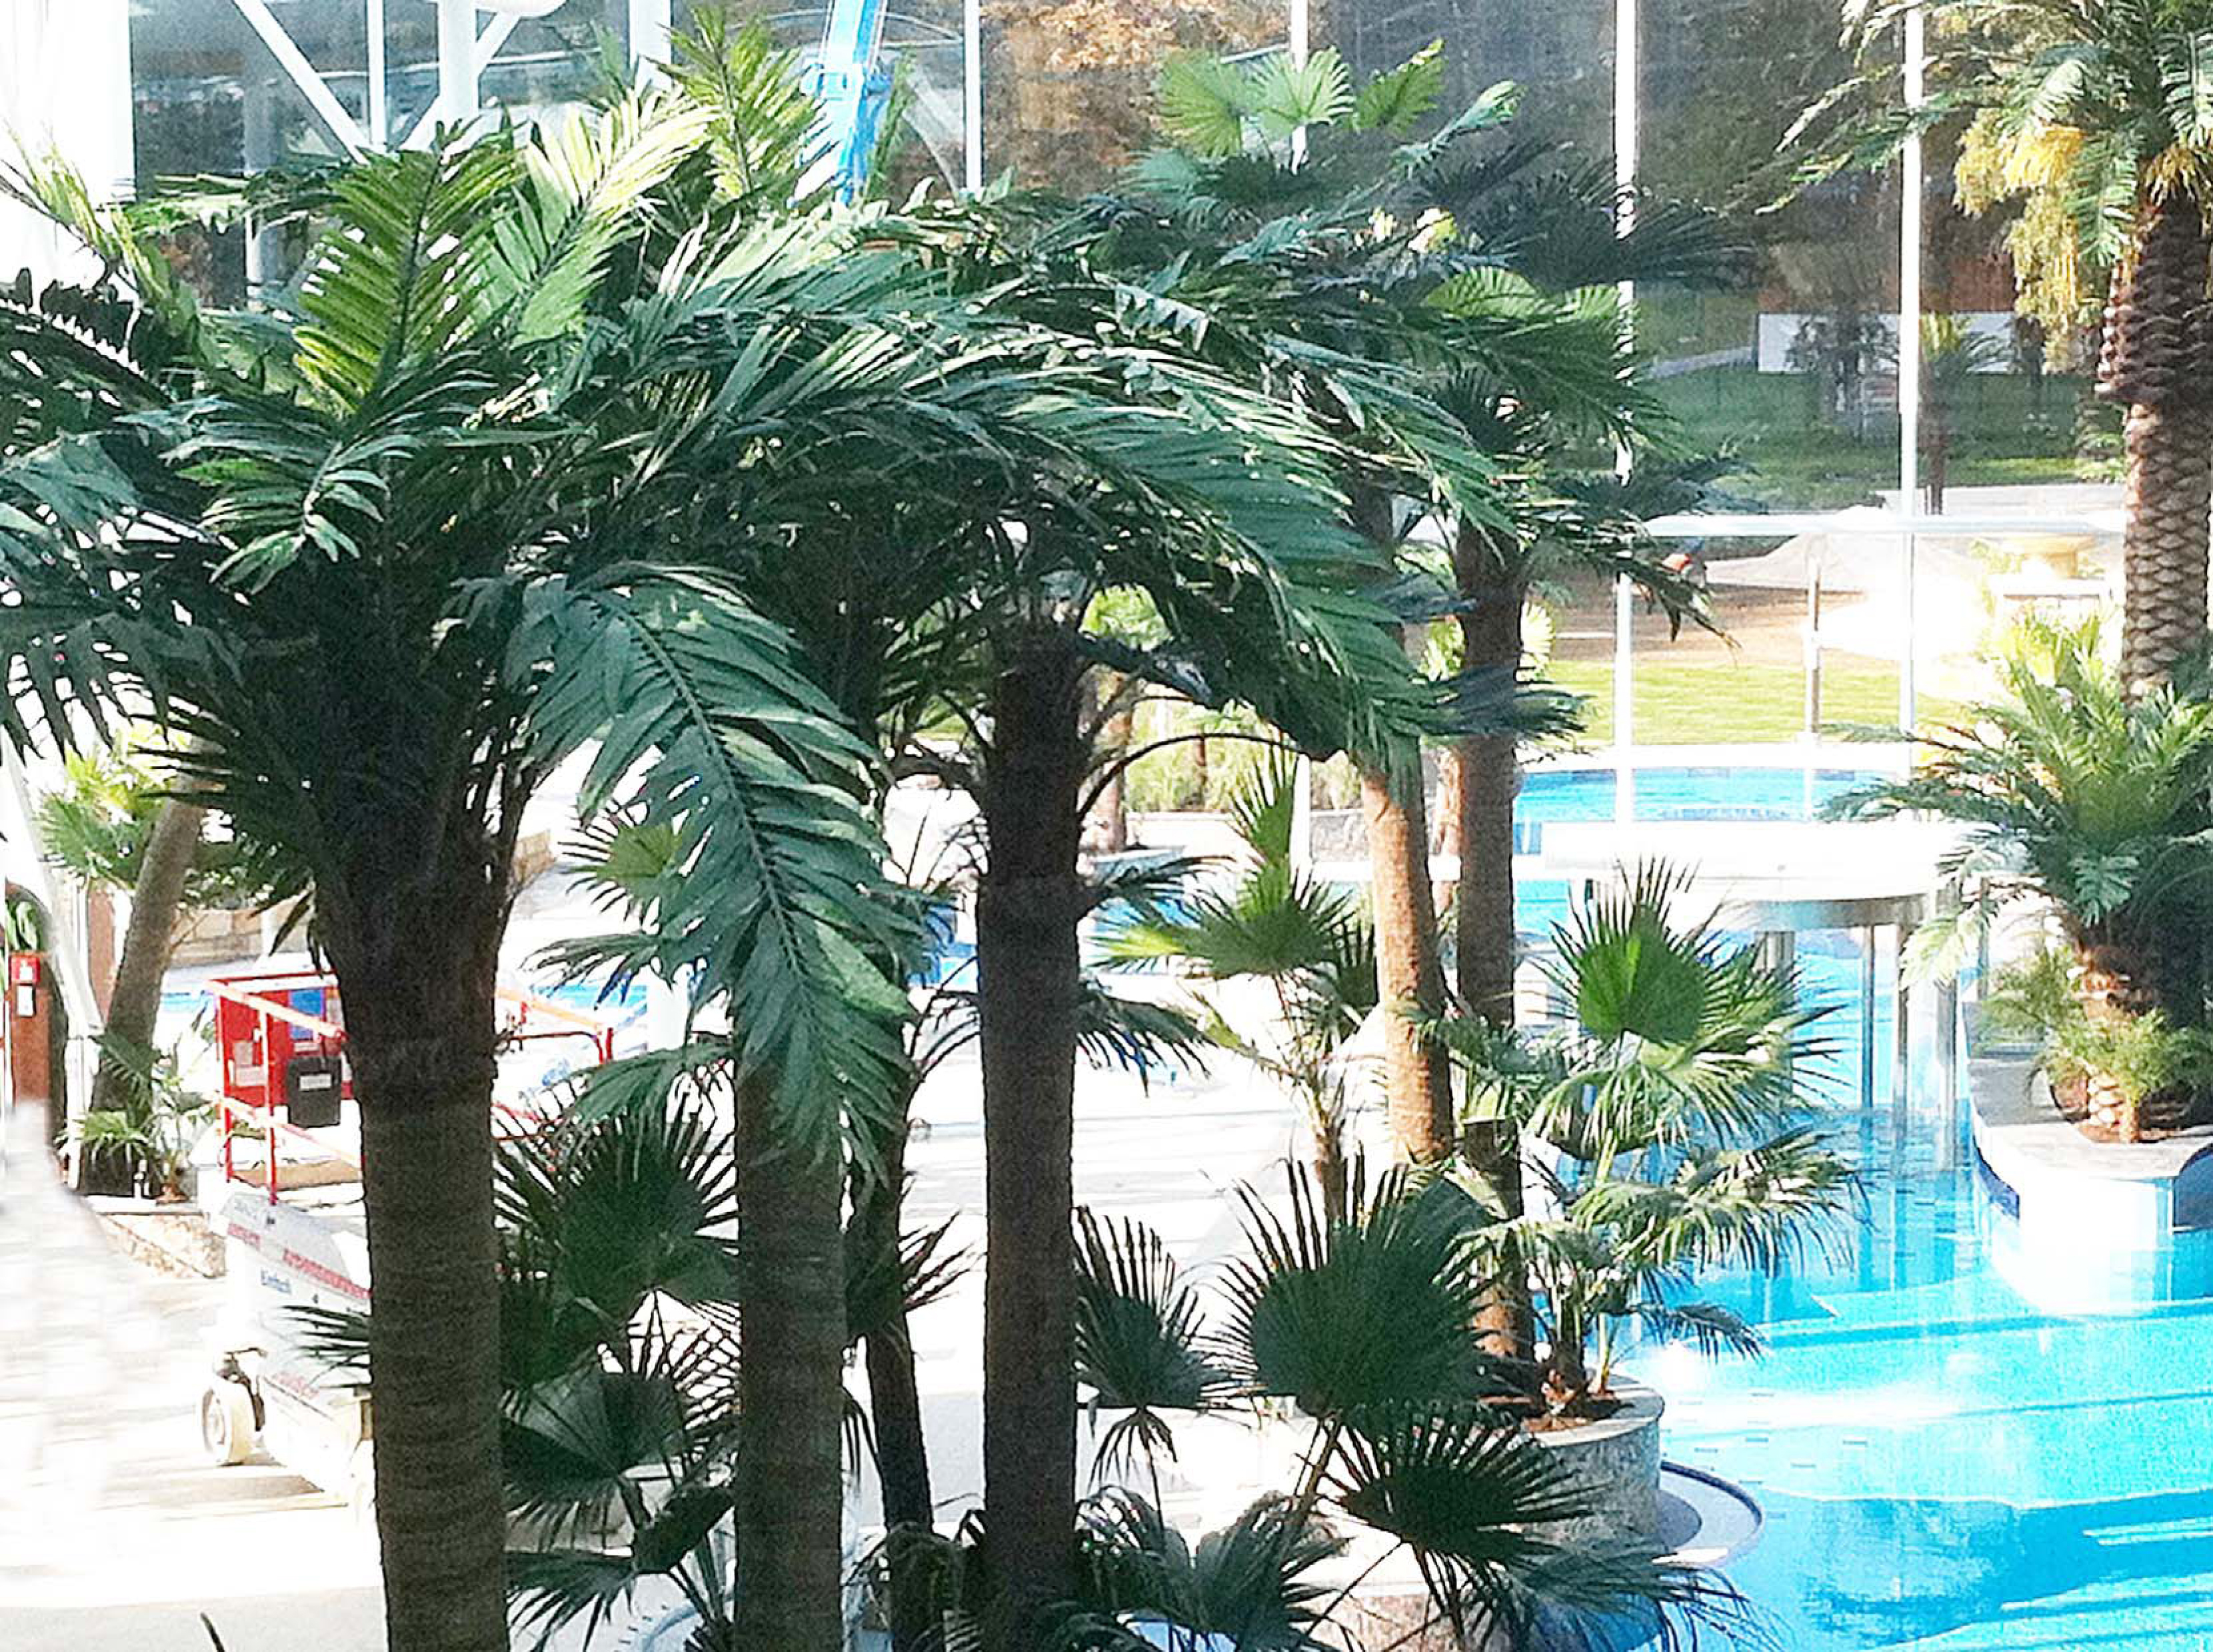 奧地利溫泉水療中心仿真棕櫚樹